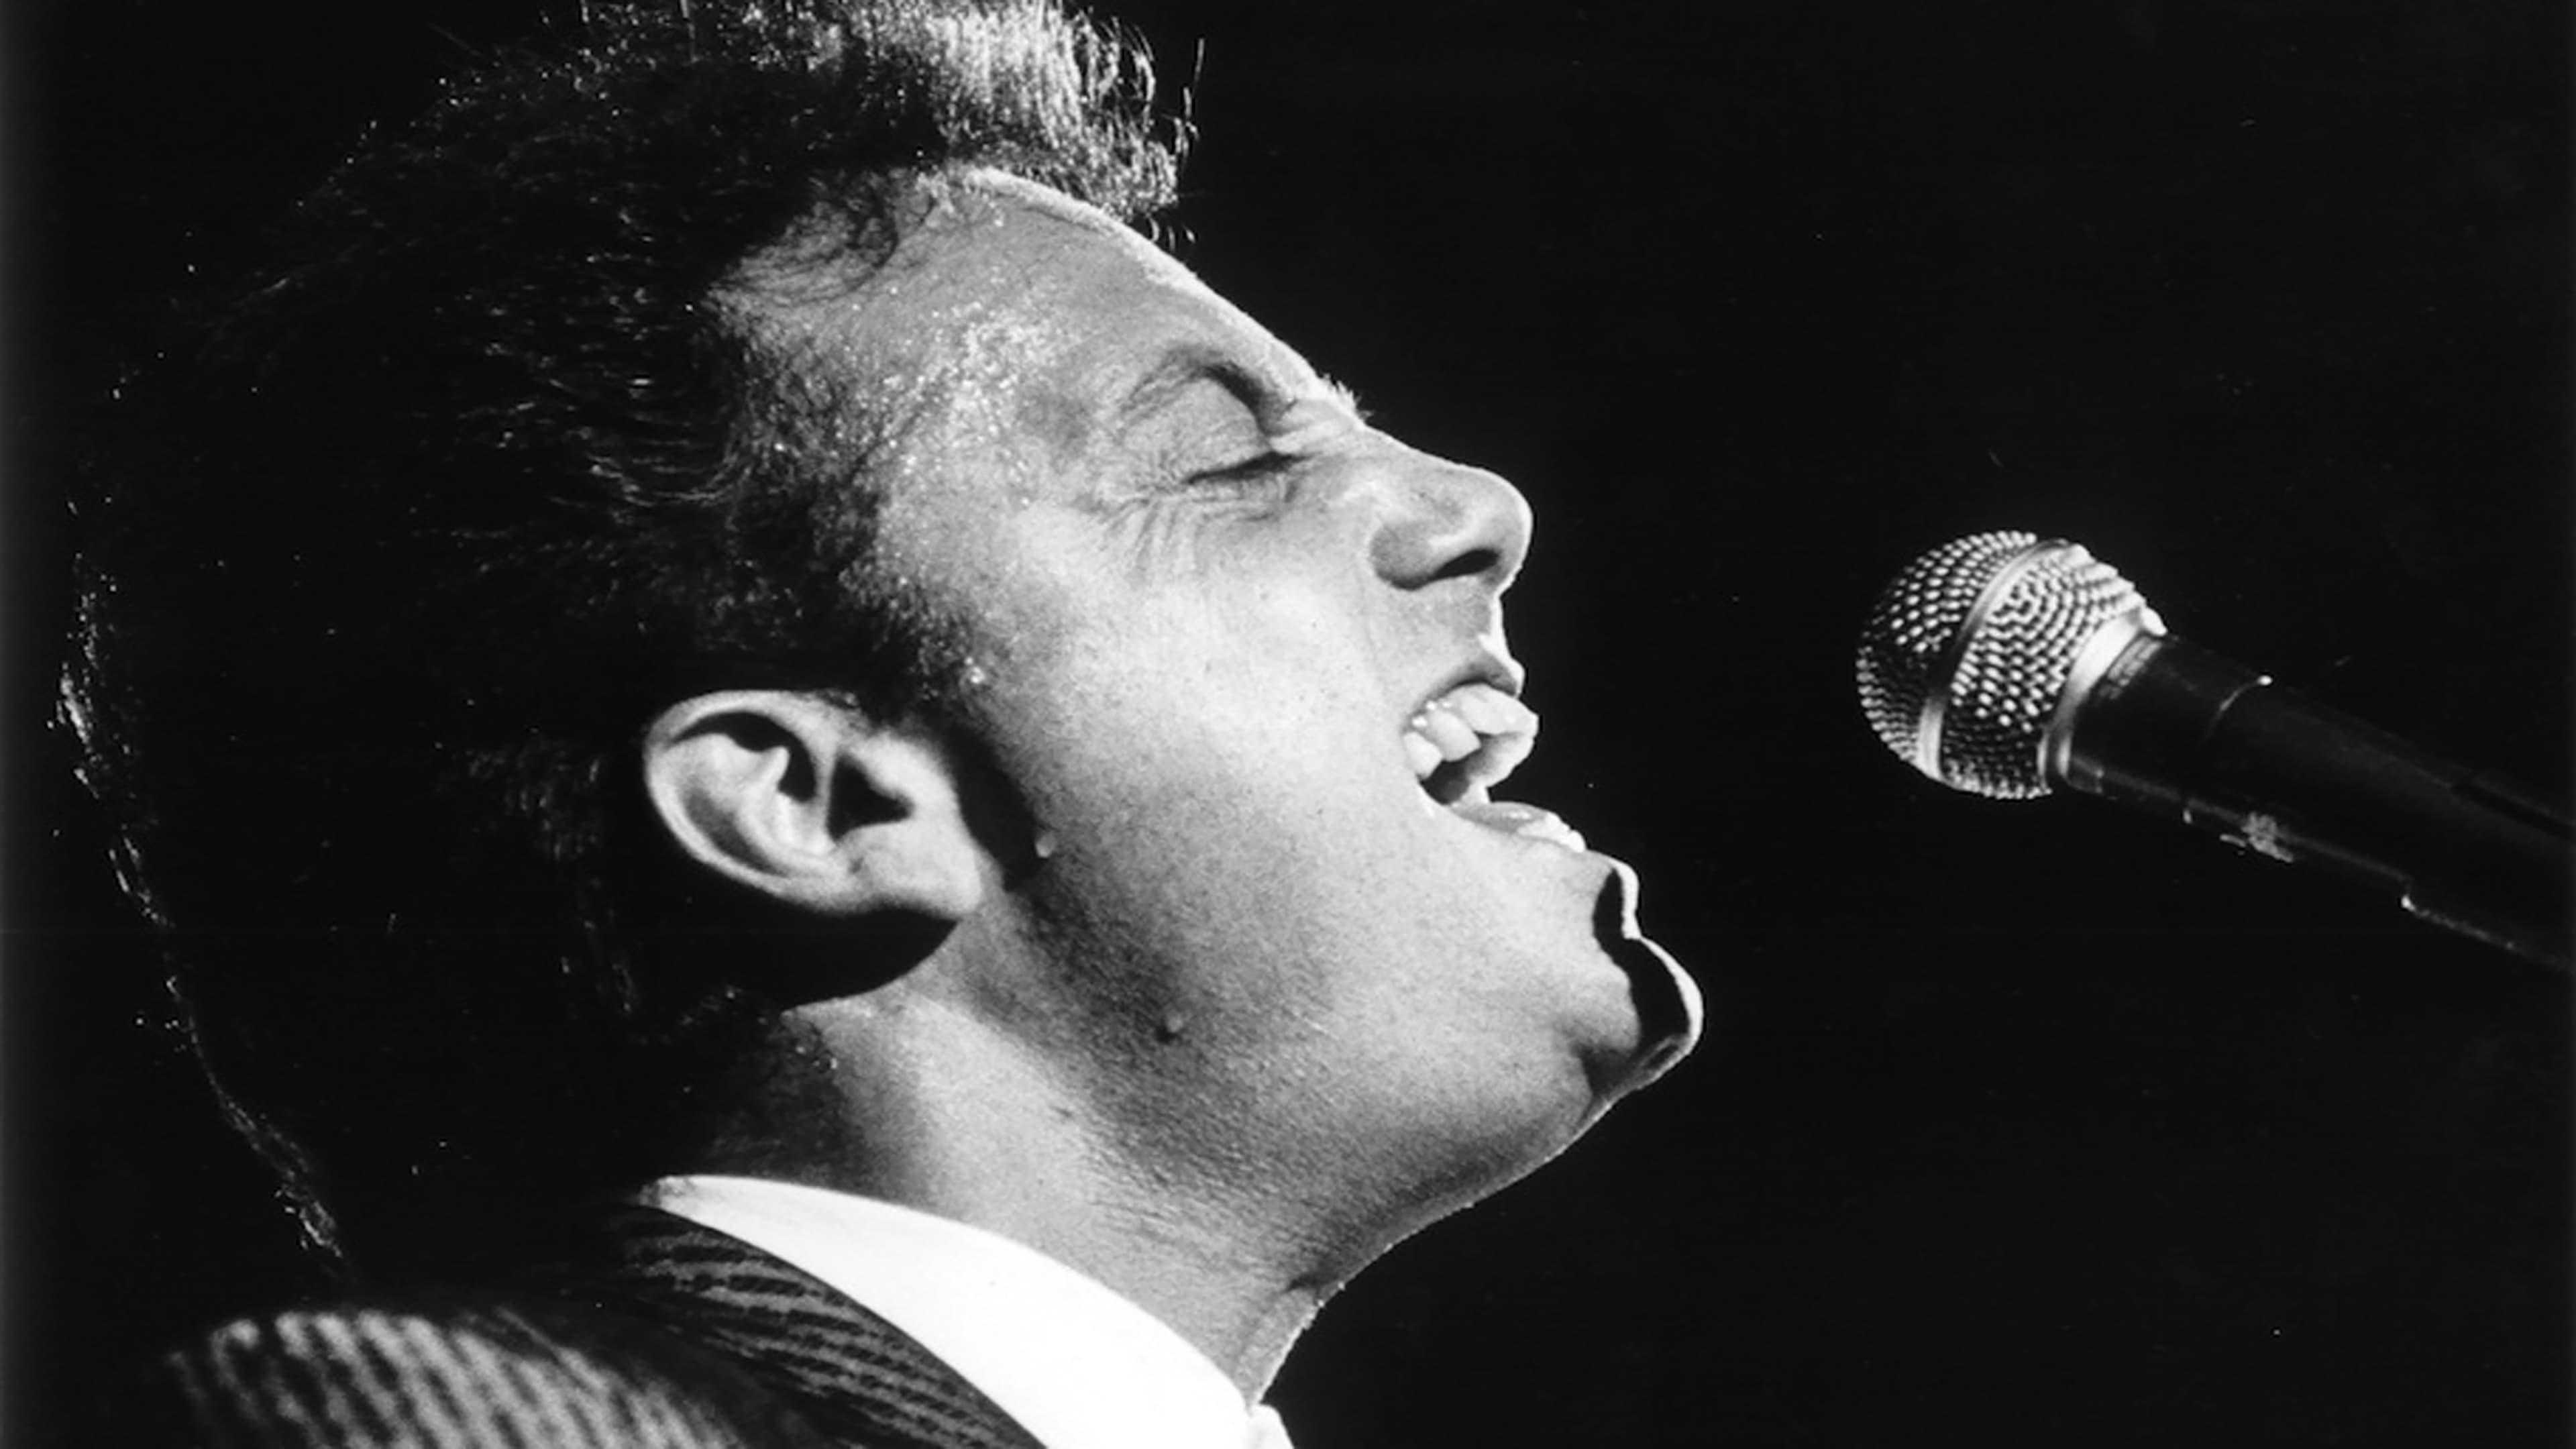 Billy Joel: Greatest Hits Volume III backdrop